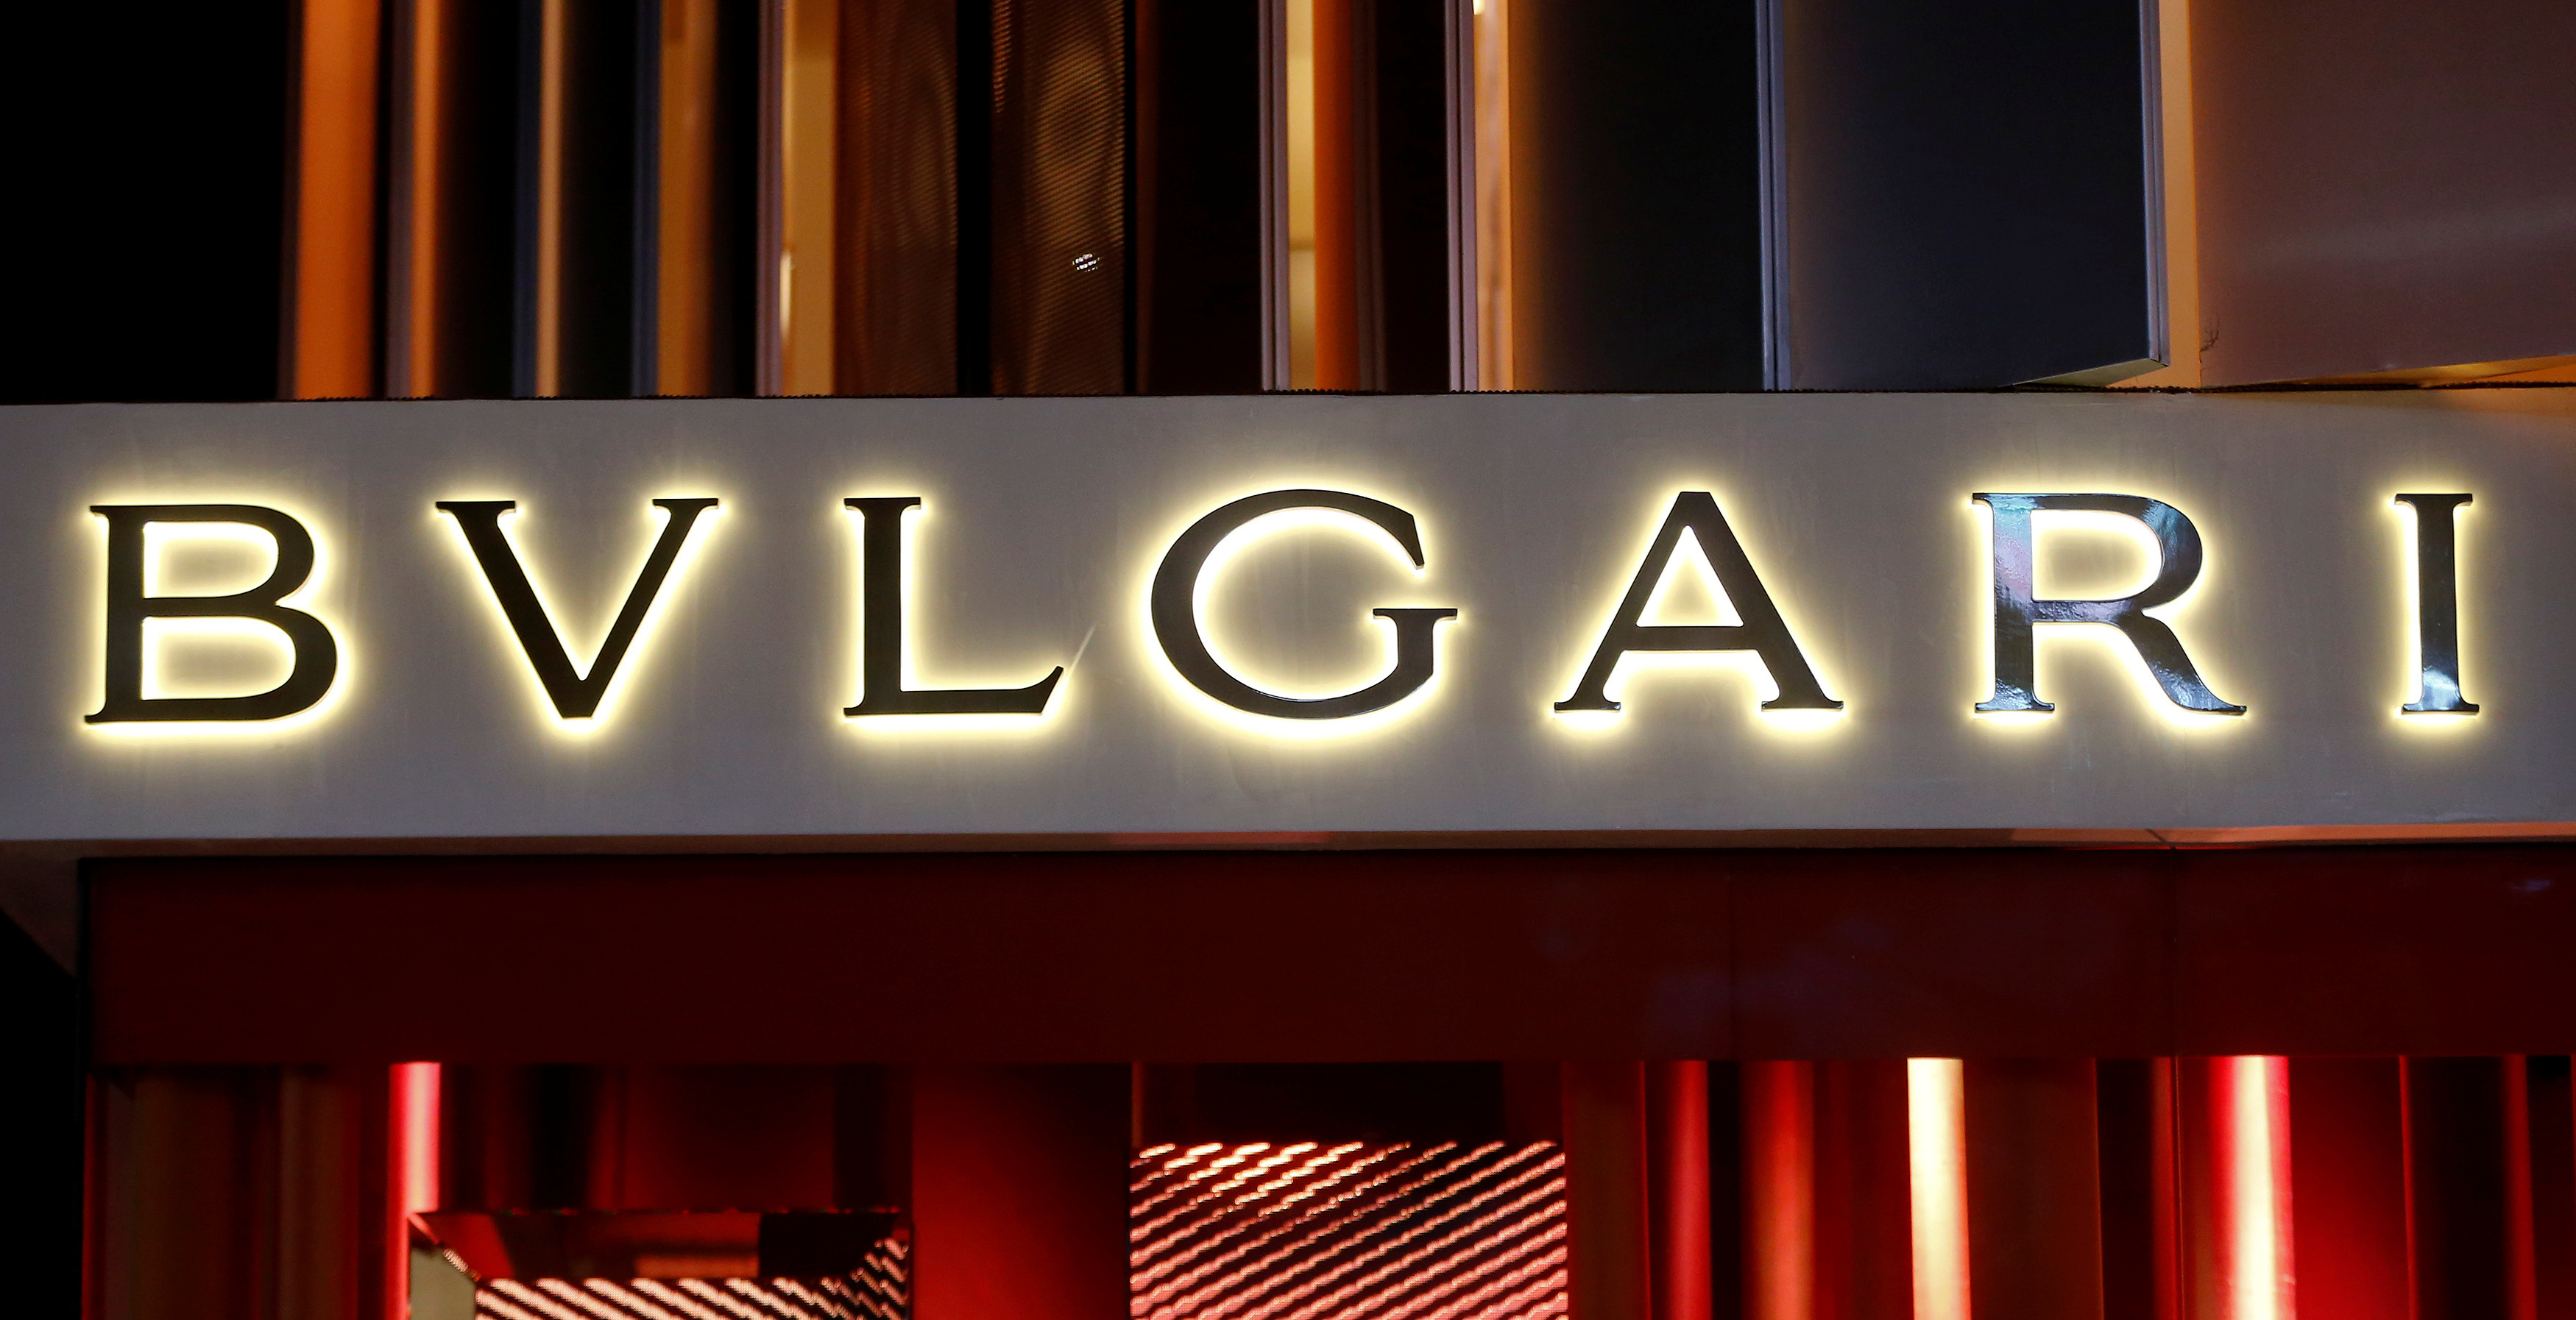 Bvlgari  Bvlgari logo, Jewelry branding, Luxury brand logo